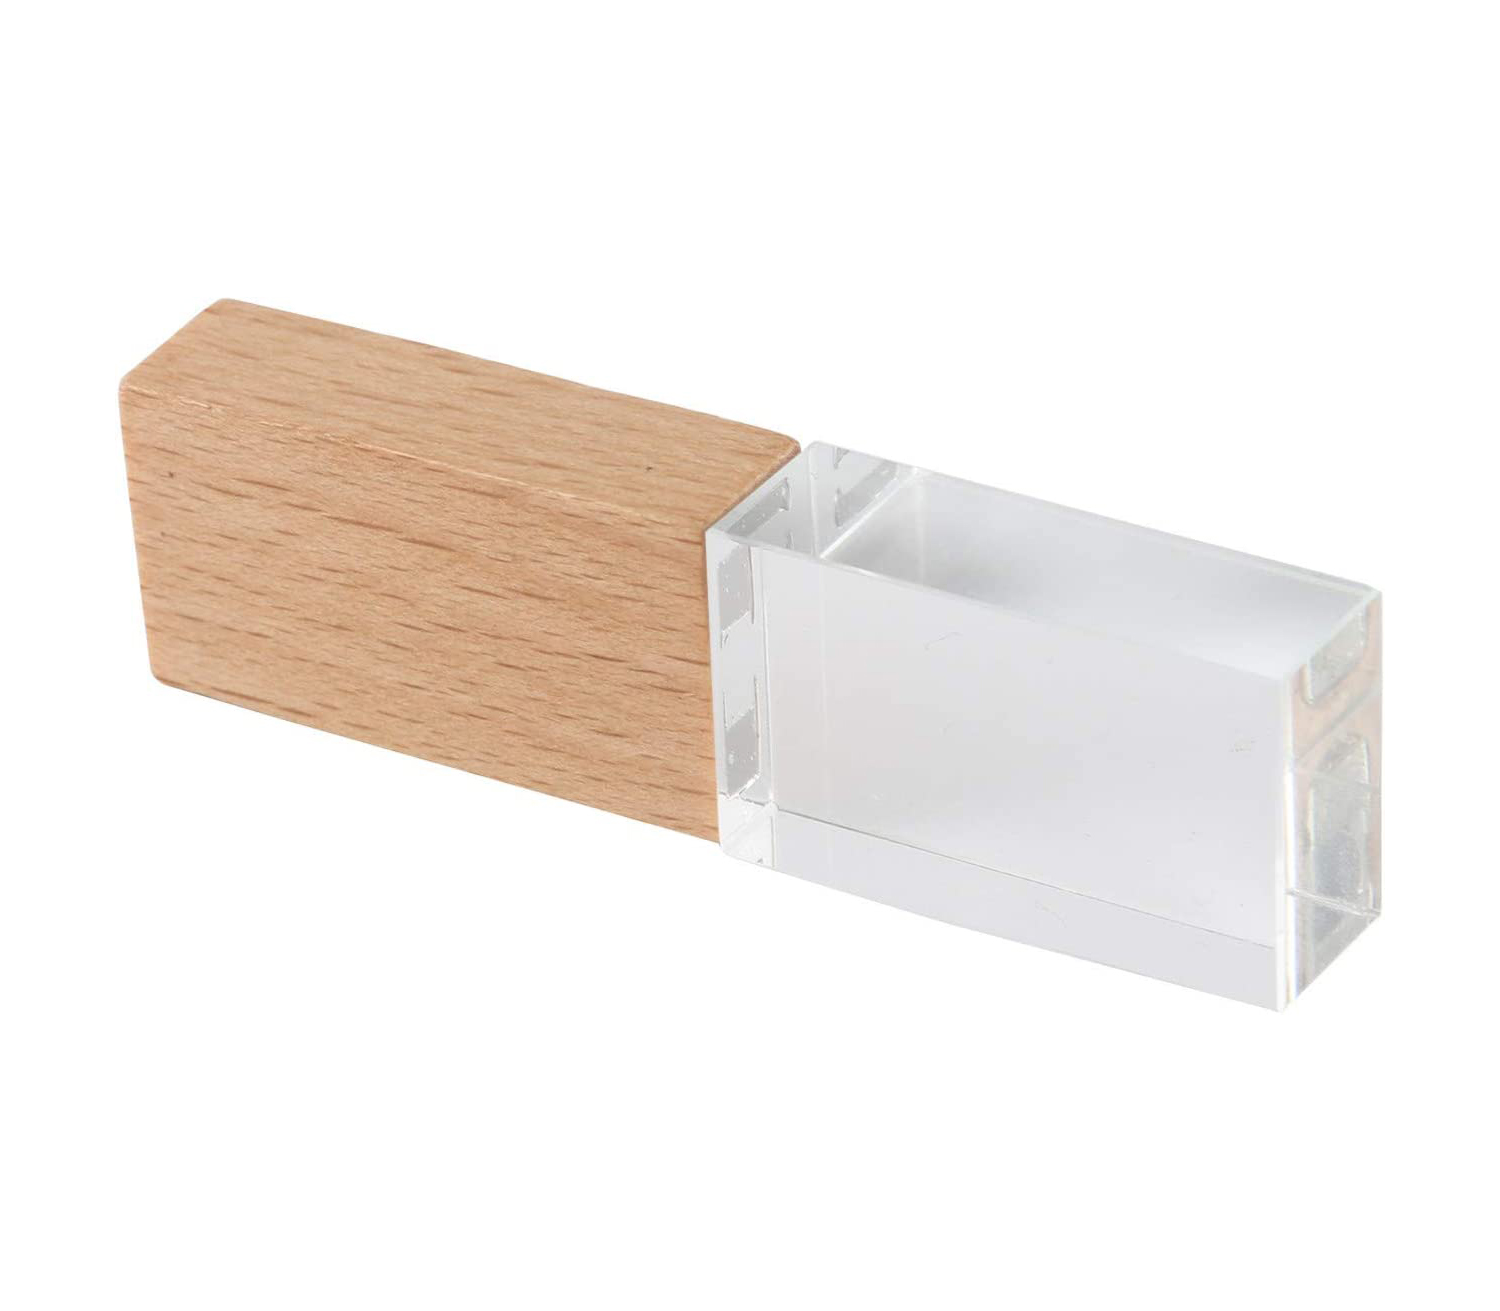 Flash Drive Crystal Wood USB